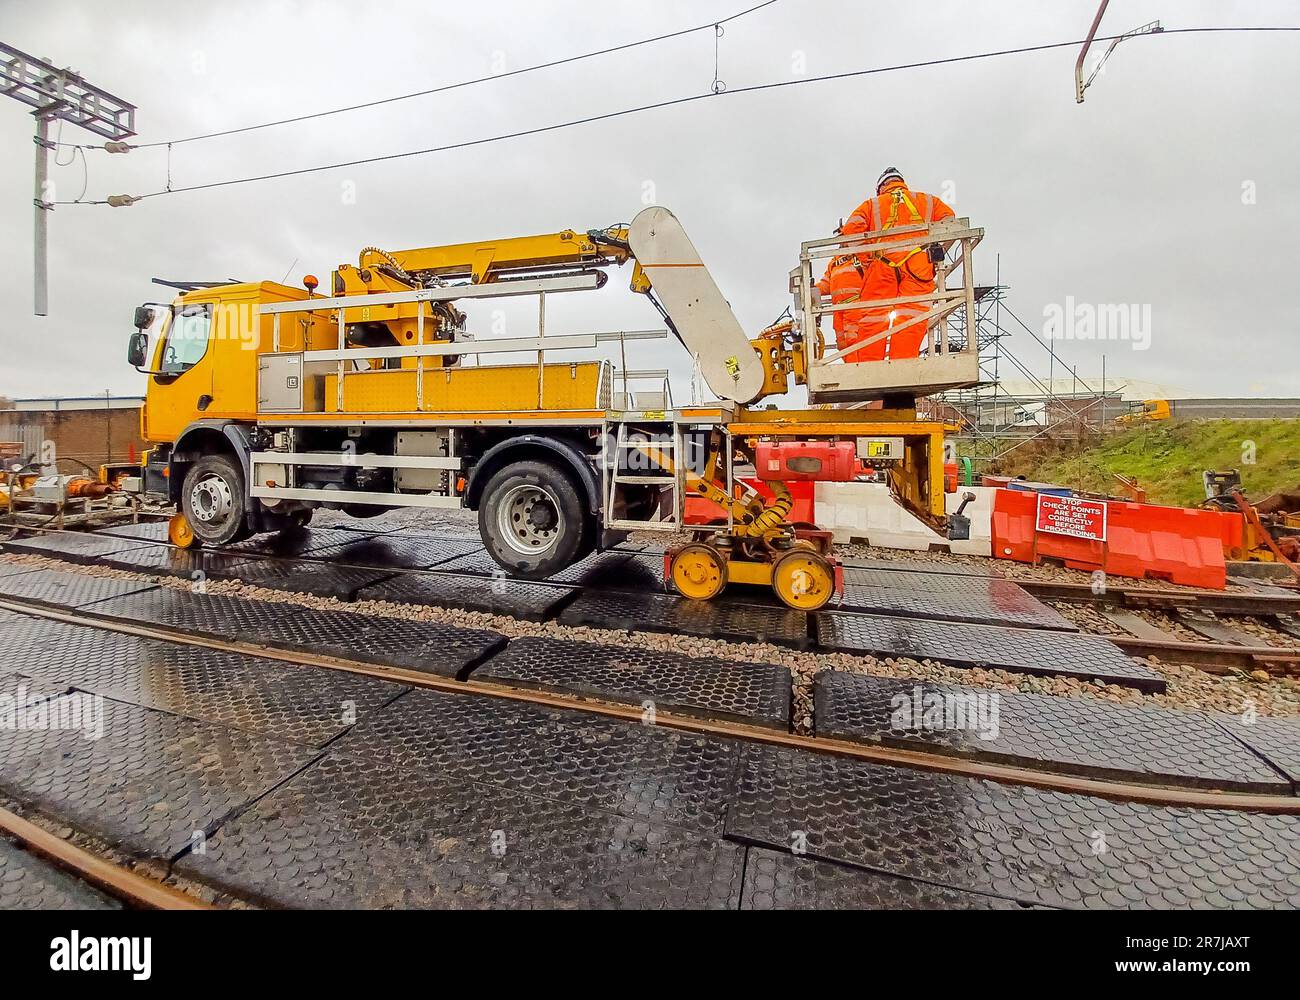 Ein Maschinenbaufahrzeug, das auf den Schienen für den Personen- und Güterverkehr eingesetzt wird und Ingenieuren Zugang zu Arbeiten an der Eisenbahninfrastruktur bietet Stockfoto